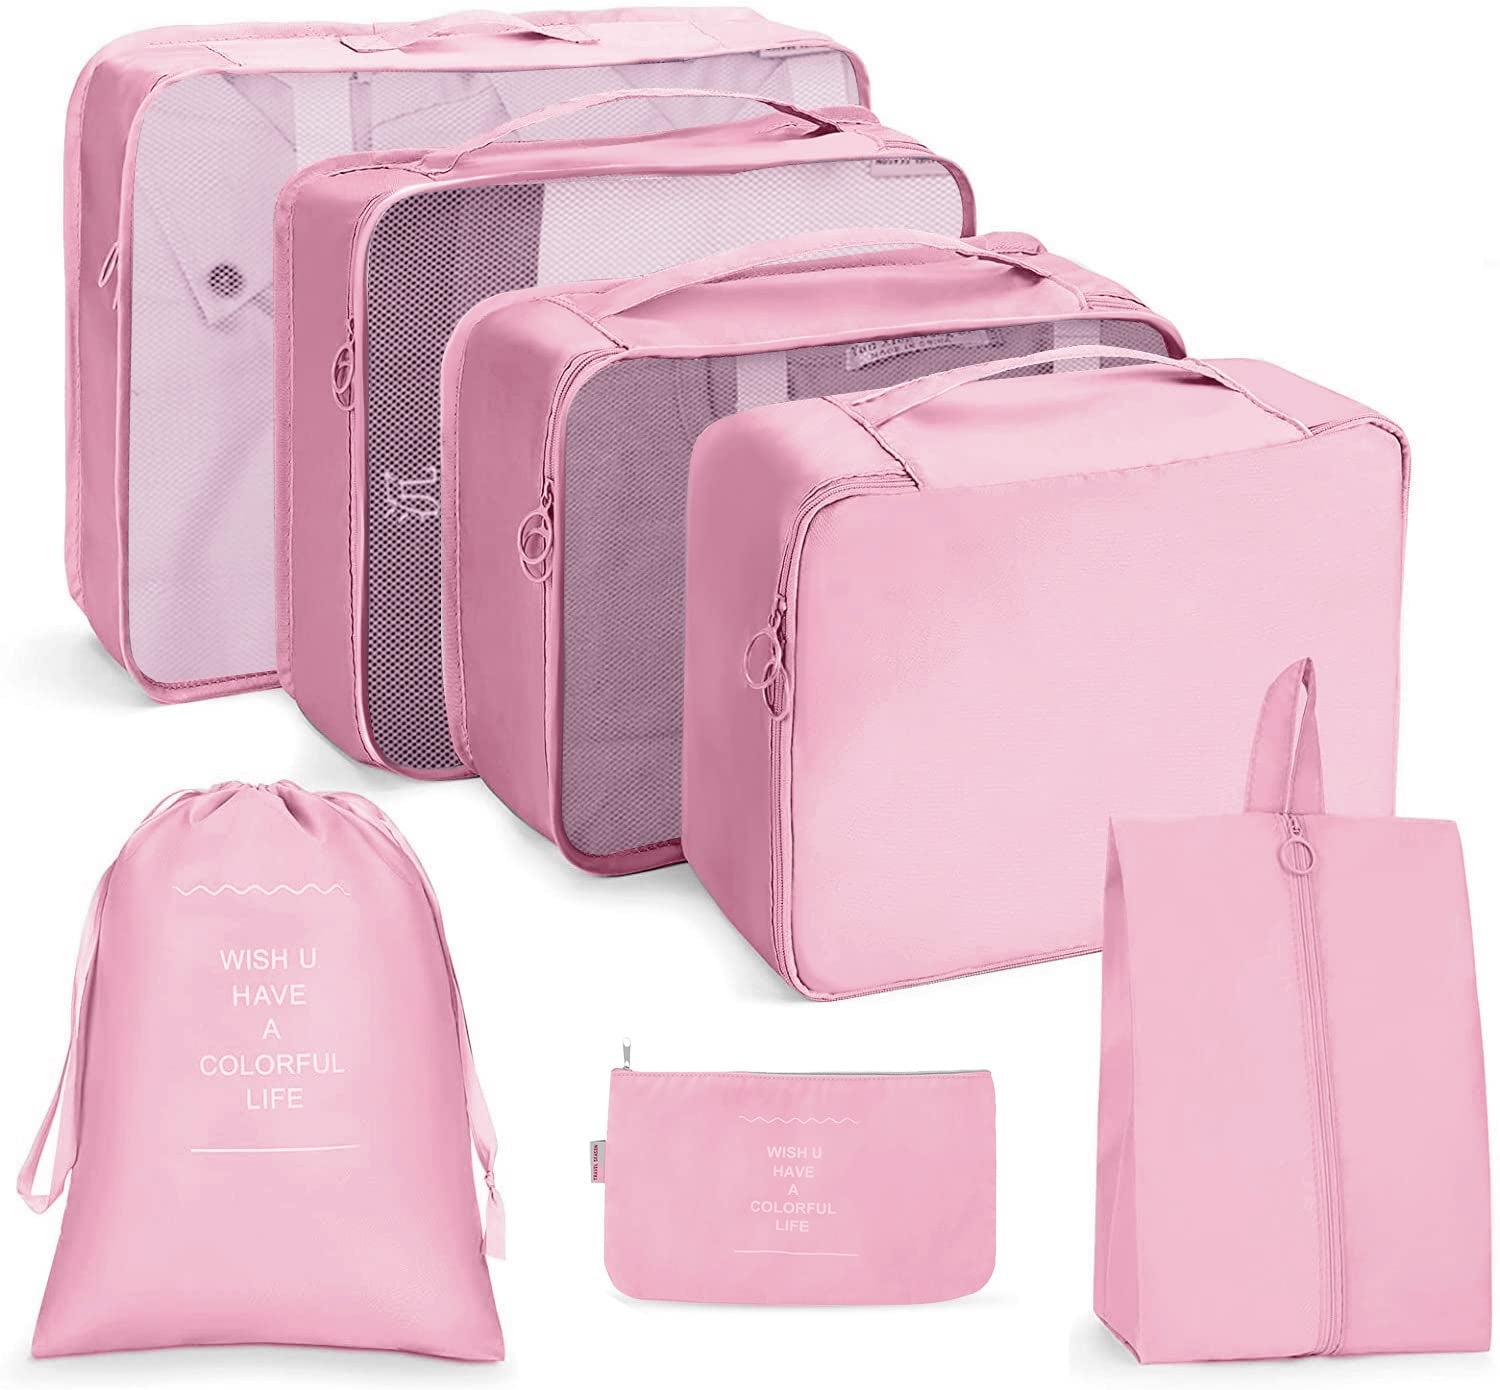 Cubos de embalaje para viajes, juego de 7 unidades, organizadores de equipaje ligeros (rosa)